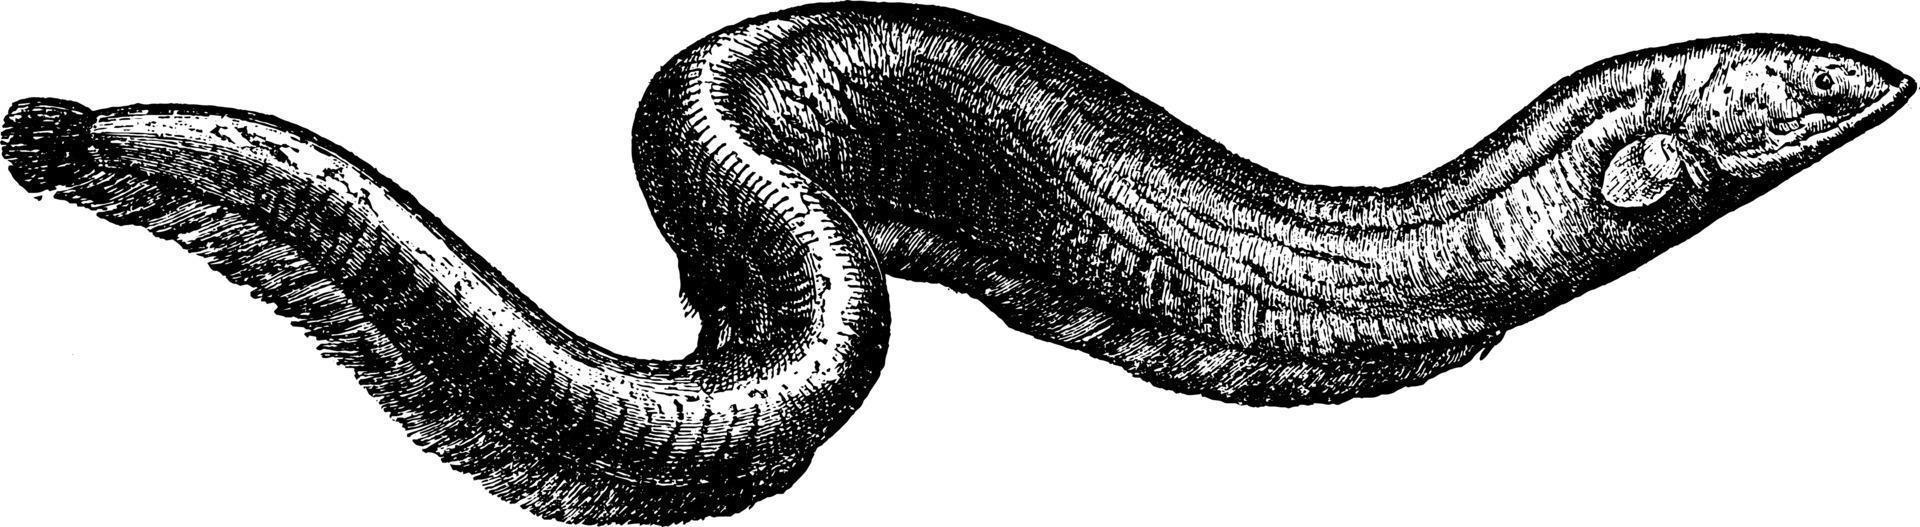 anguille électrique, illustration vintage. vecteur